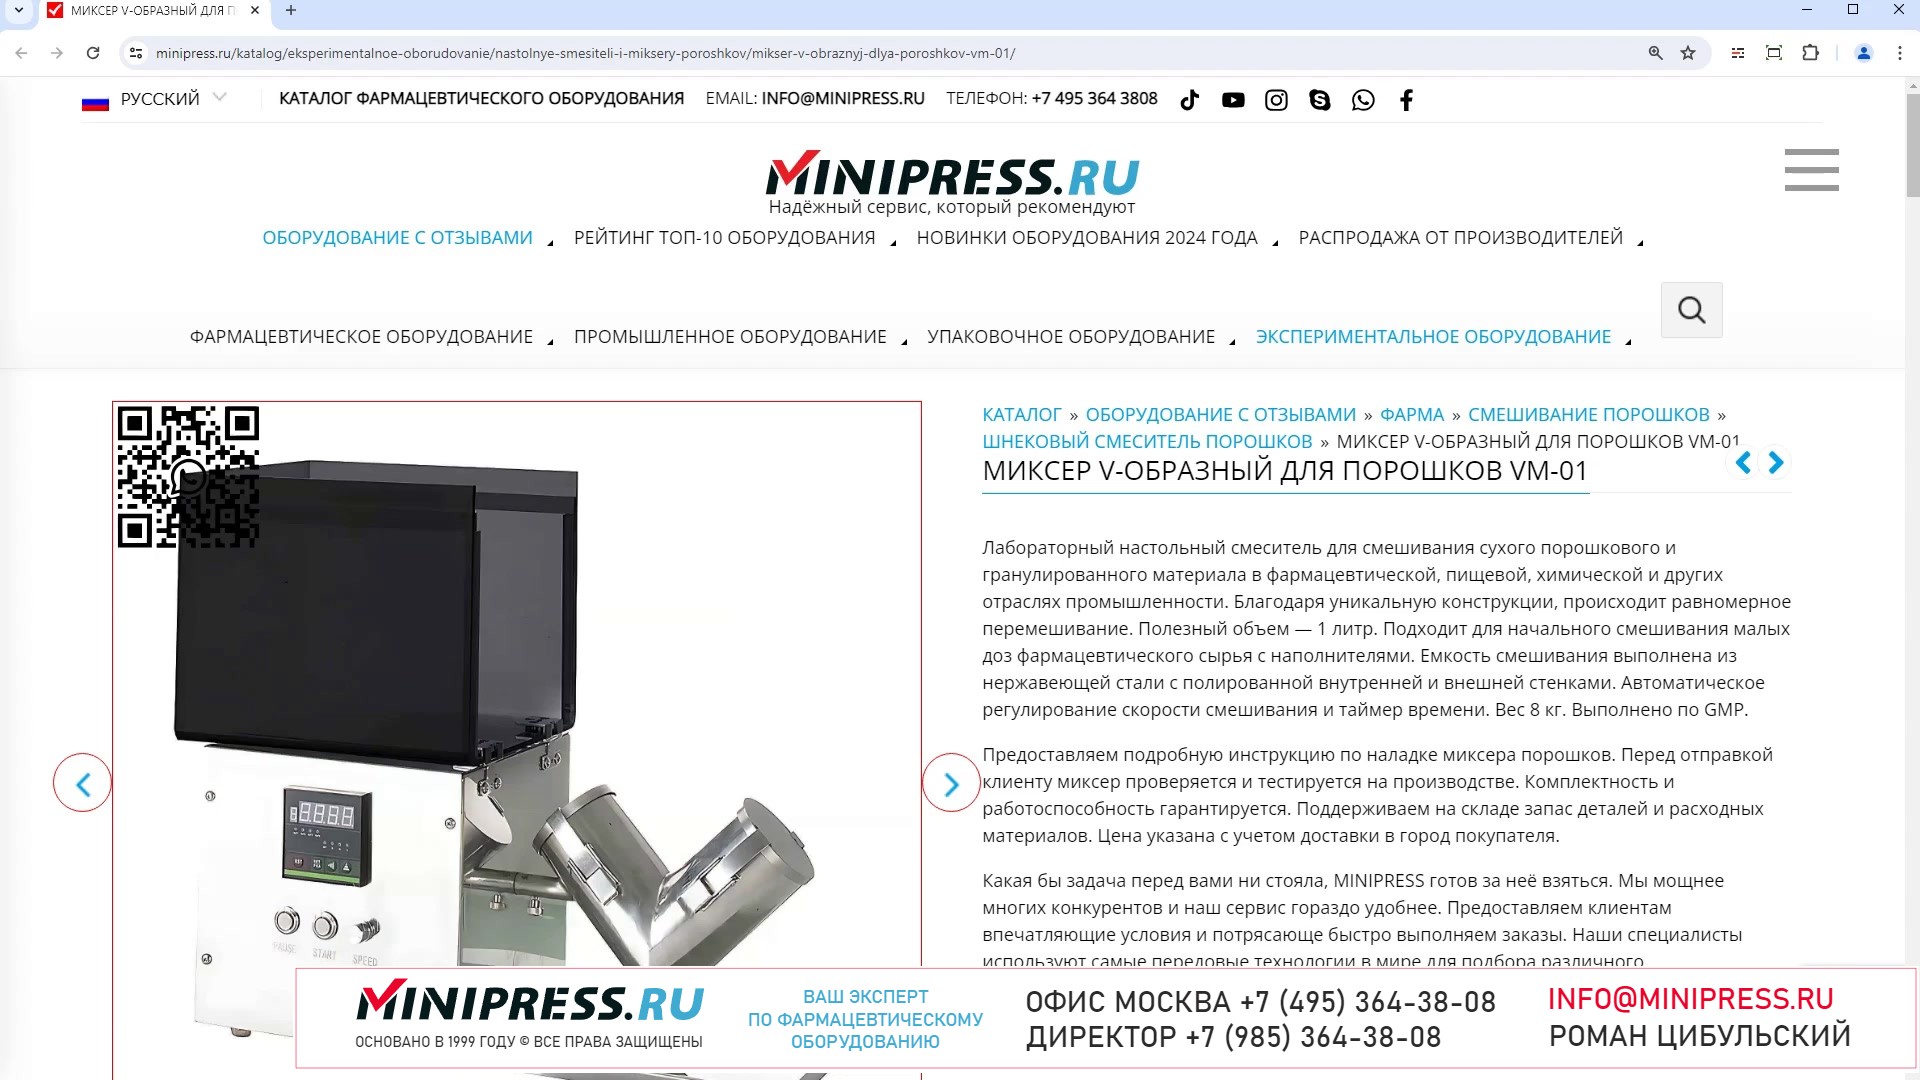 Minipress.ru Миксер V-образный для порошков VM-01